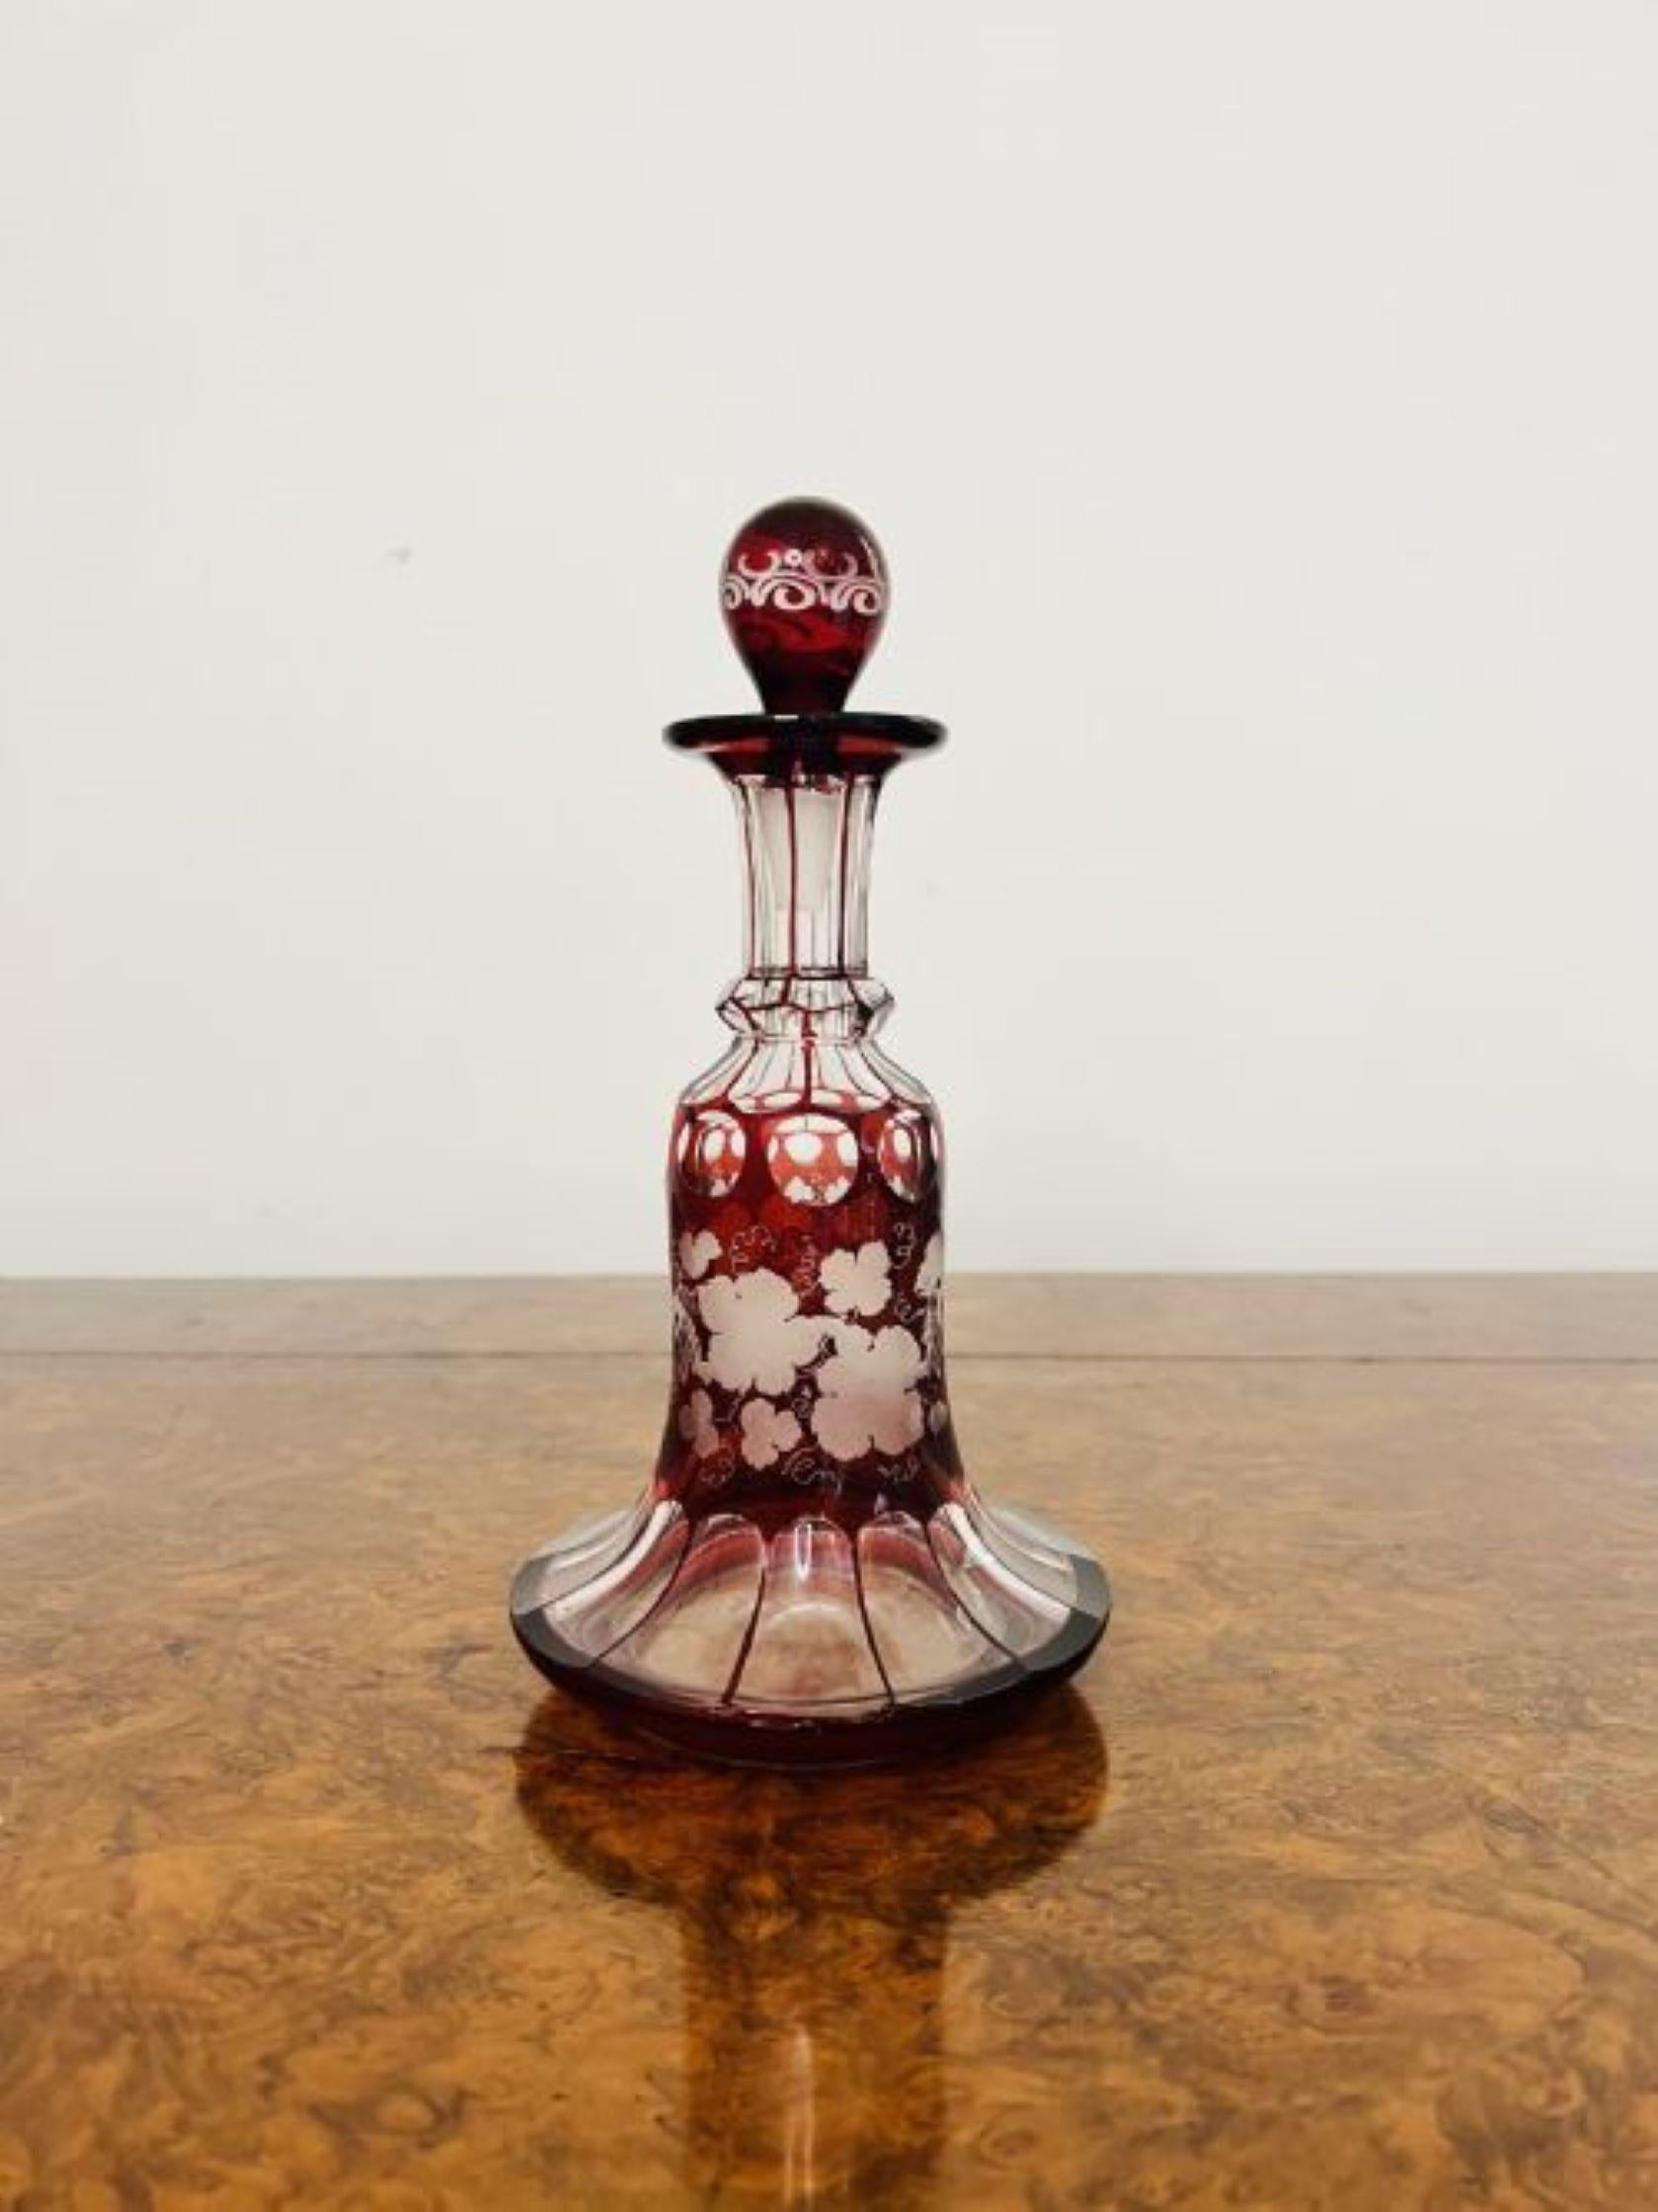 Hochwertige antike viktorianische Glasparfümflasche mit Stöpsel, die einen Körper aus rotem und klarem Glas mit geätzter fruchtiger Weindekoration und dem originalen Glasstöpsel hat.
